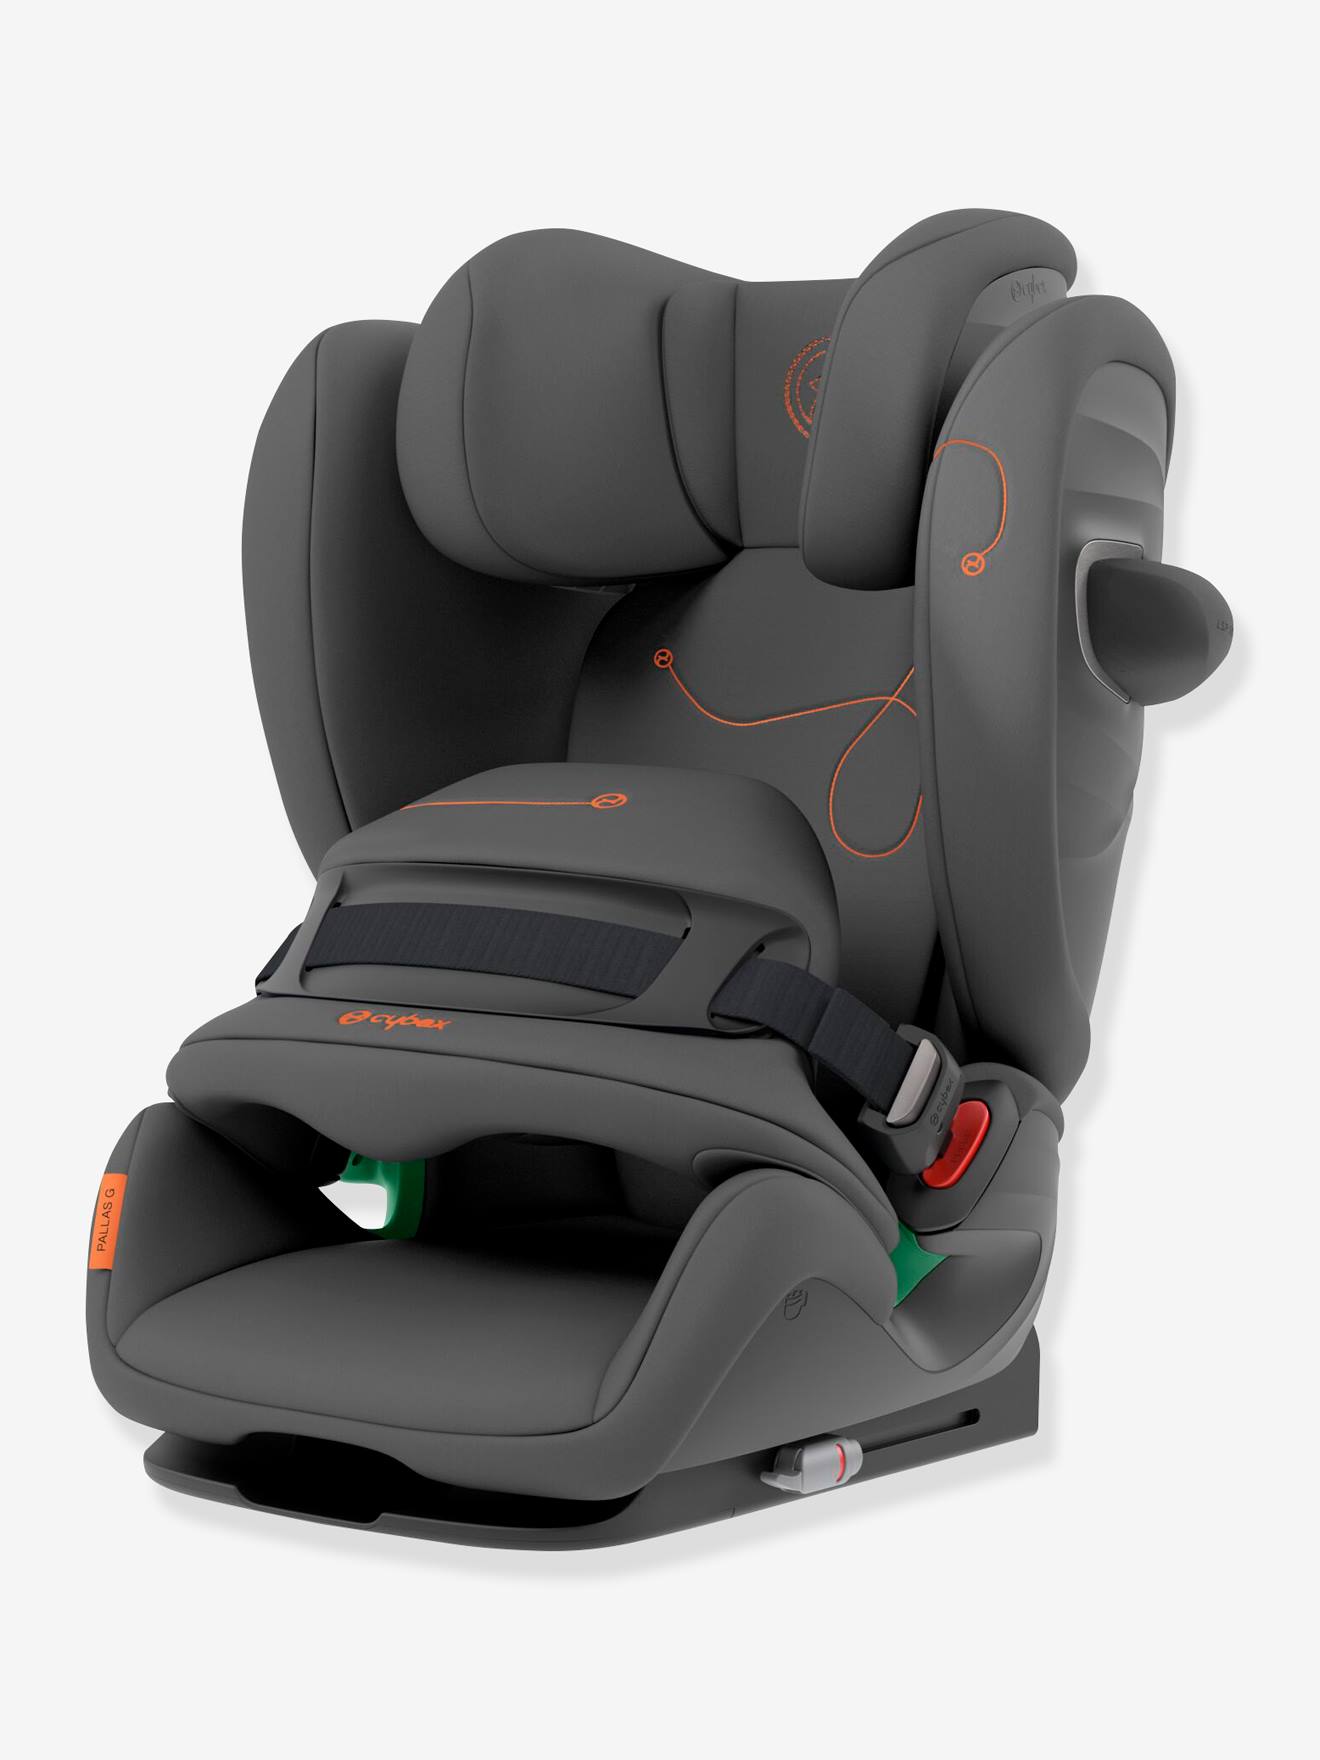 Acheter Siège de sécurité de voiture Portable pour enfants, siège de sécurité  élastique pour véhicule, tapis de siège pour enfants de 9 mois à 12 ans